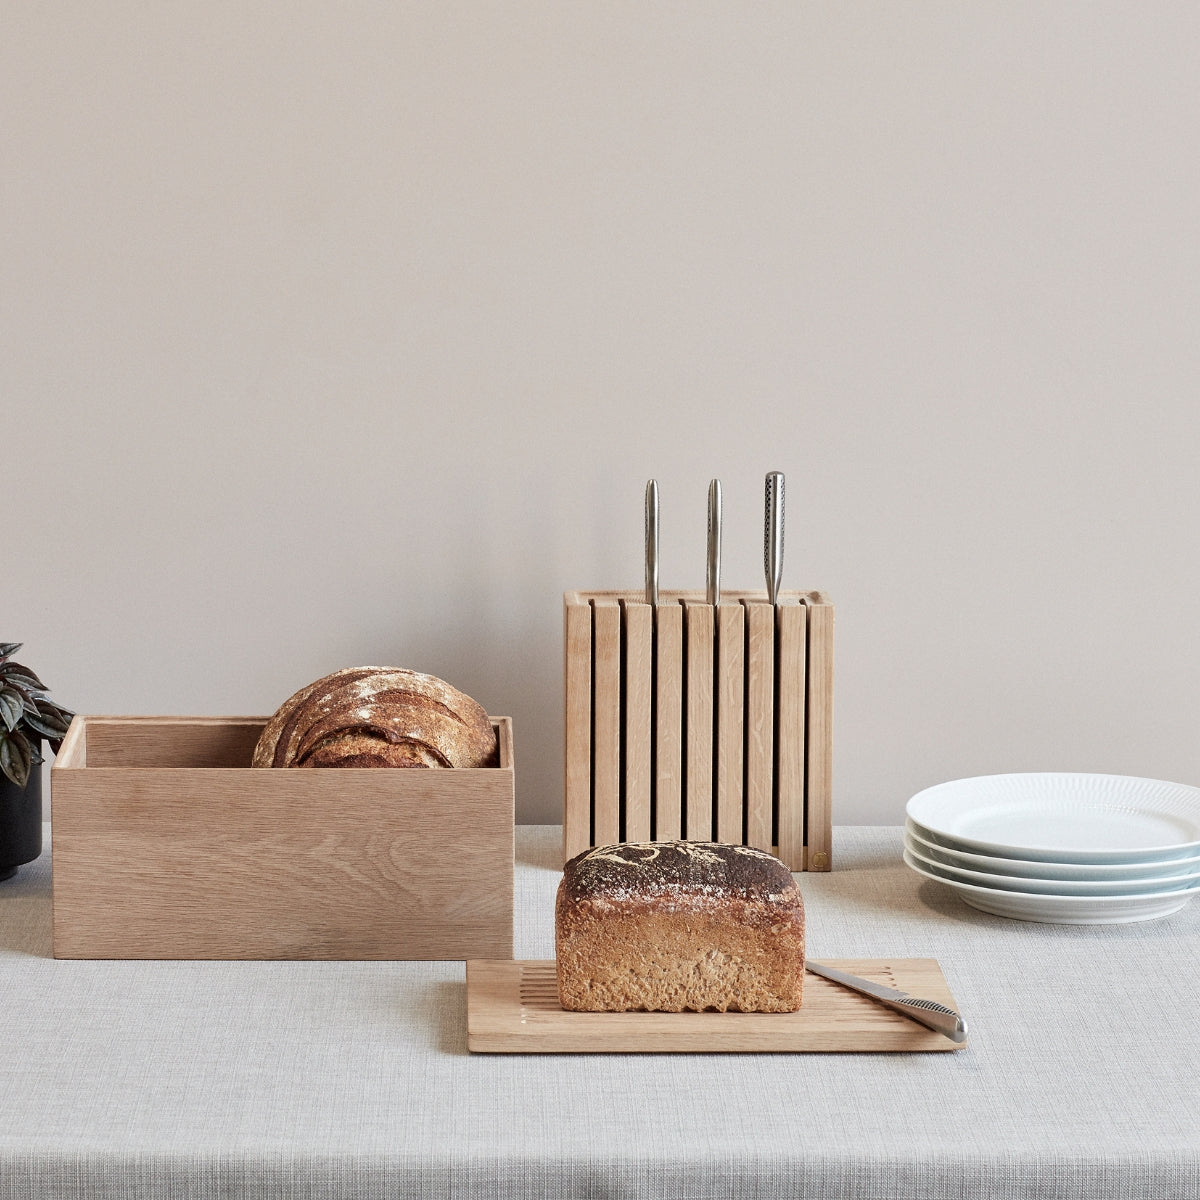 Andersen | Gourmet Wood Box